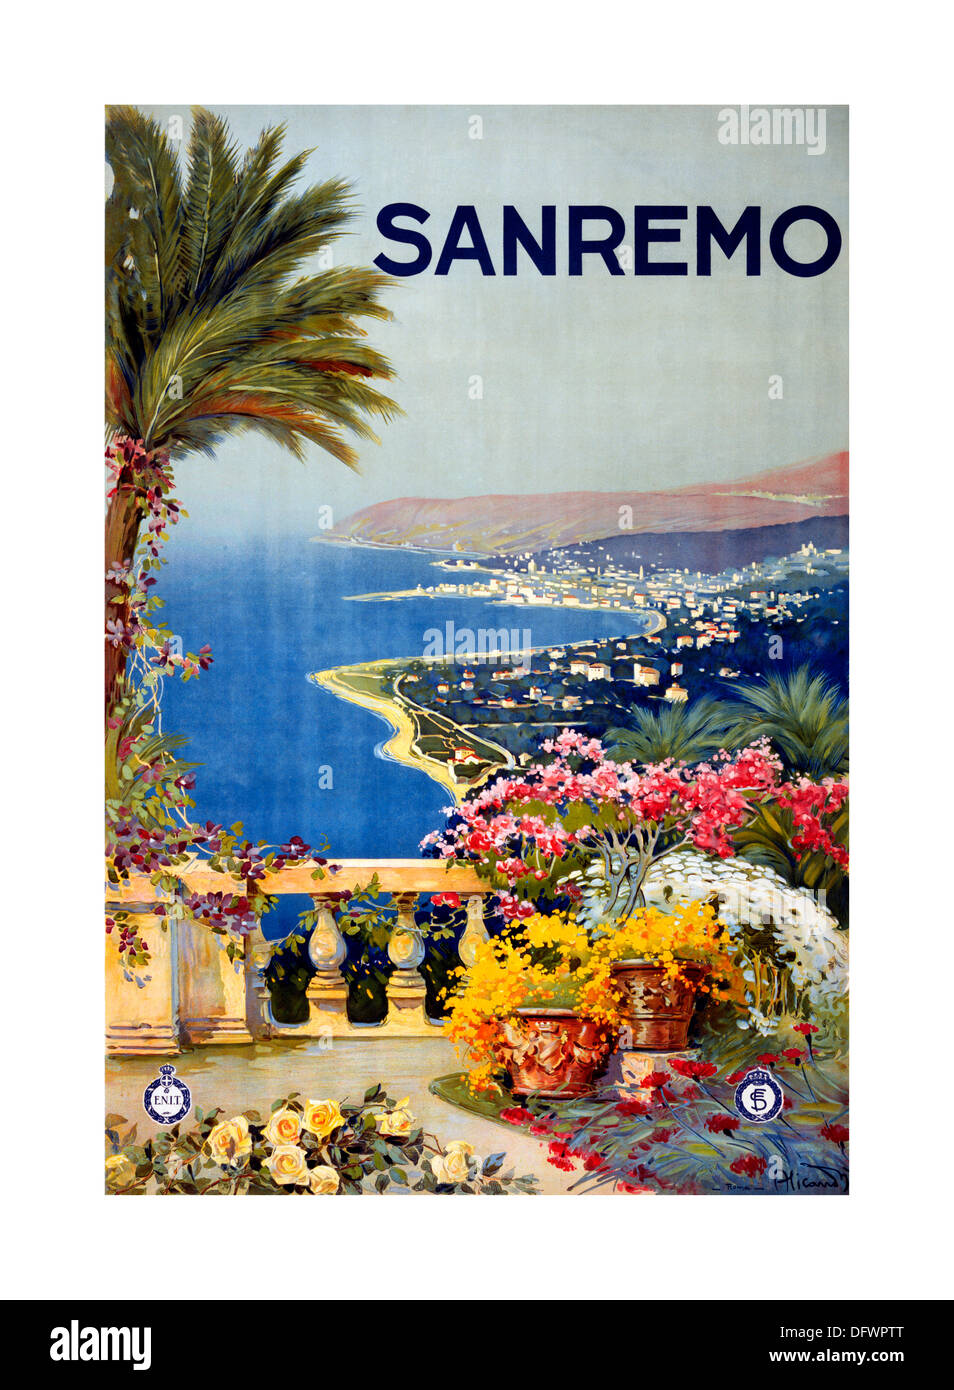 Affiche de voyage vintage SAN REMO Sanremo avec terrasse de palmiers et vue sur la côte du début des années 1920 Italie Banque D'Images